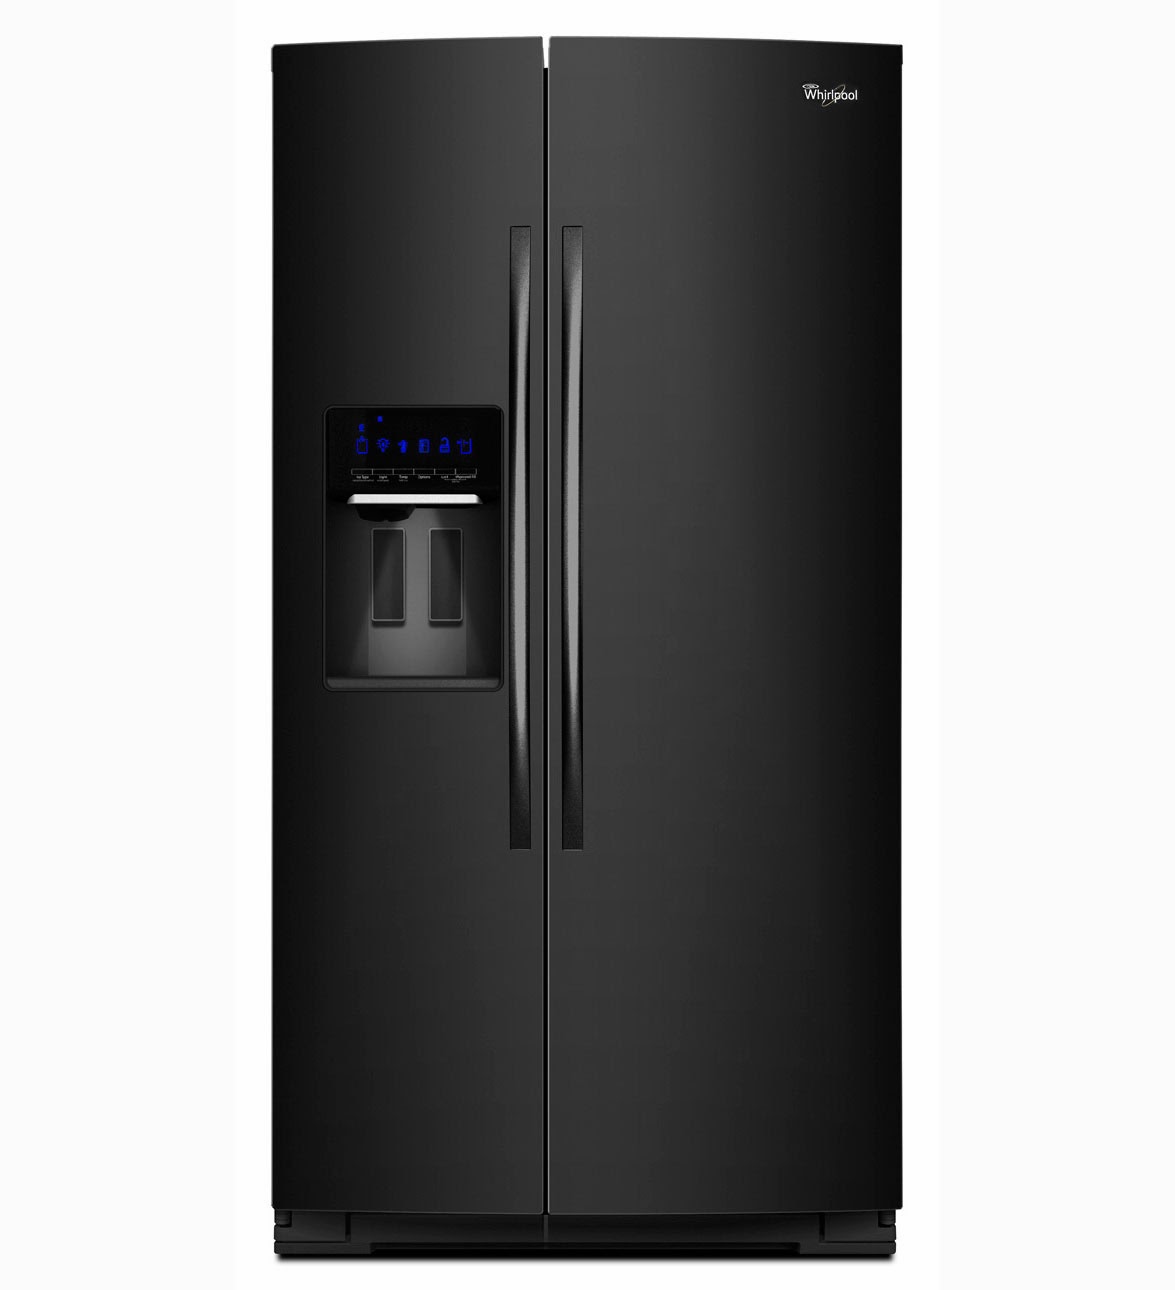 whirlpool-refrigerator-brand-gss30c6eyb-refrigerator